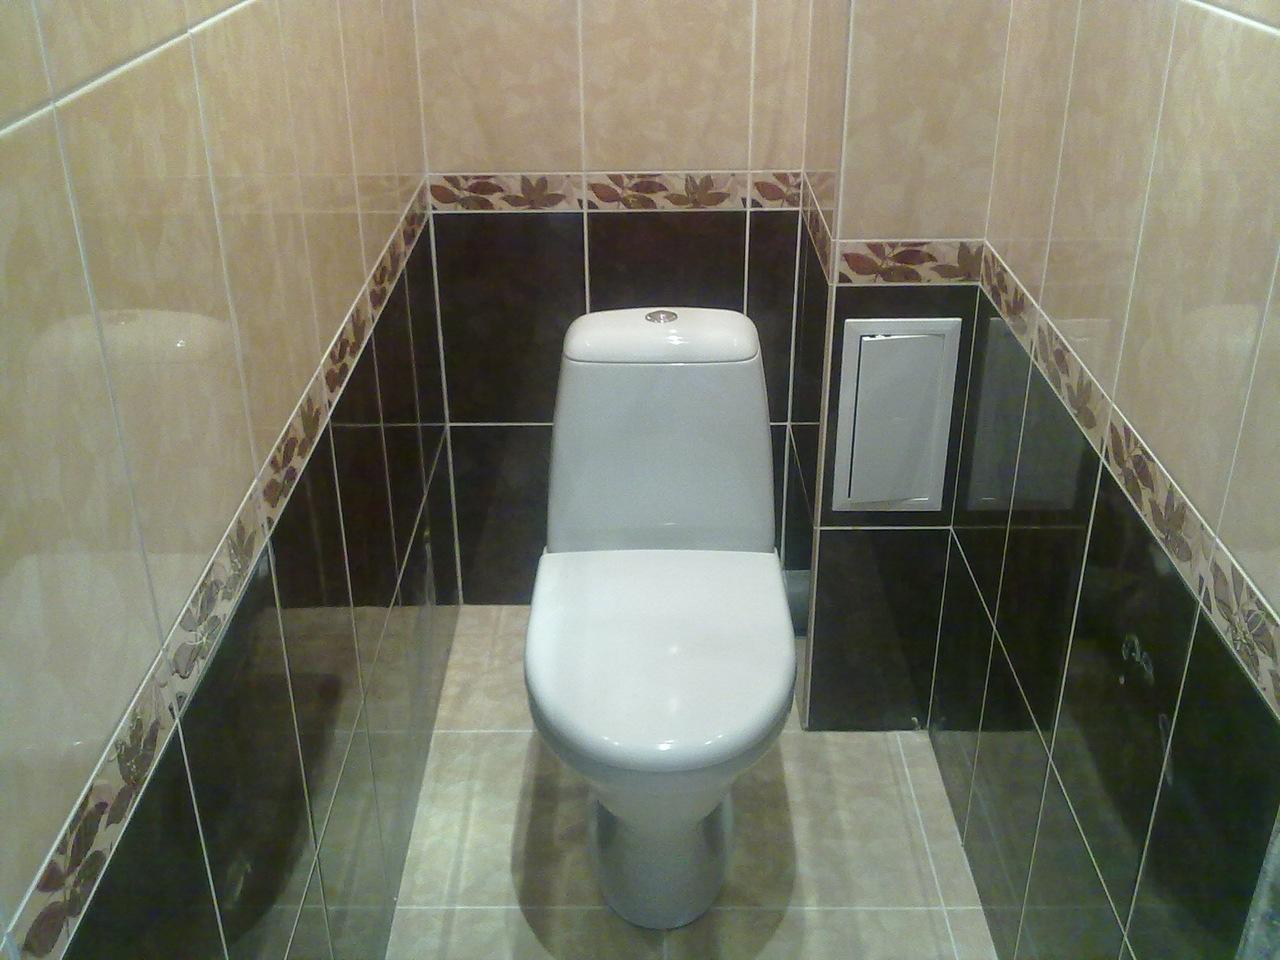 Облицовка керамической плиткой является самым распространенным вариантом отделки для туалета